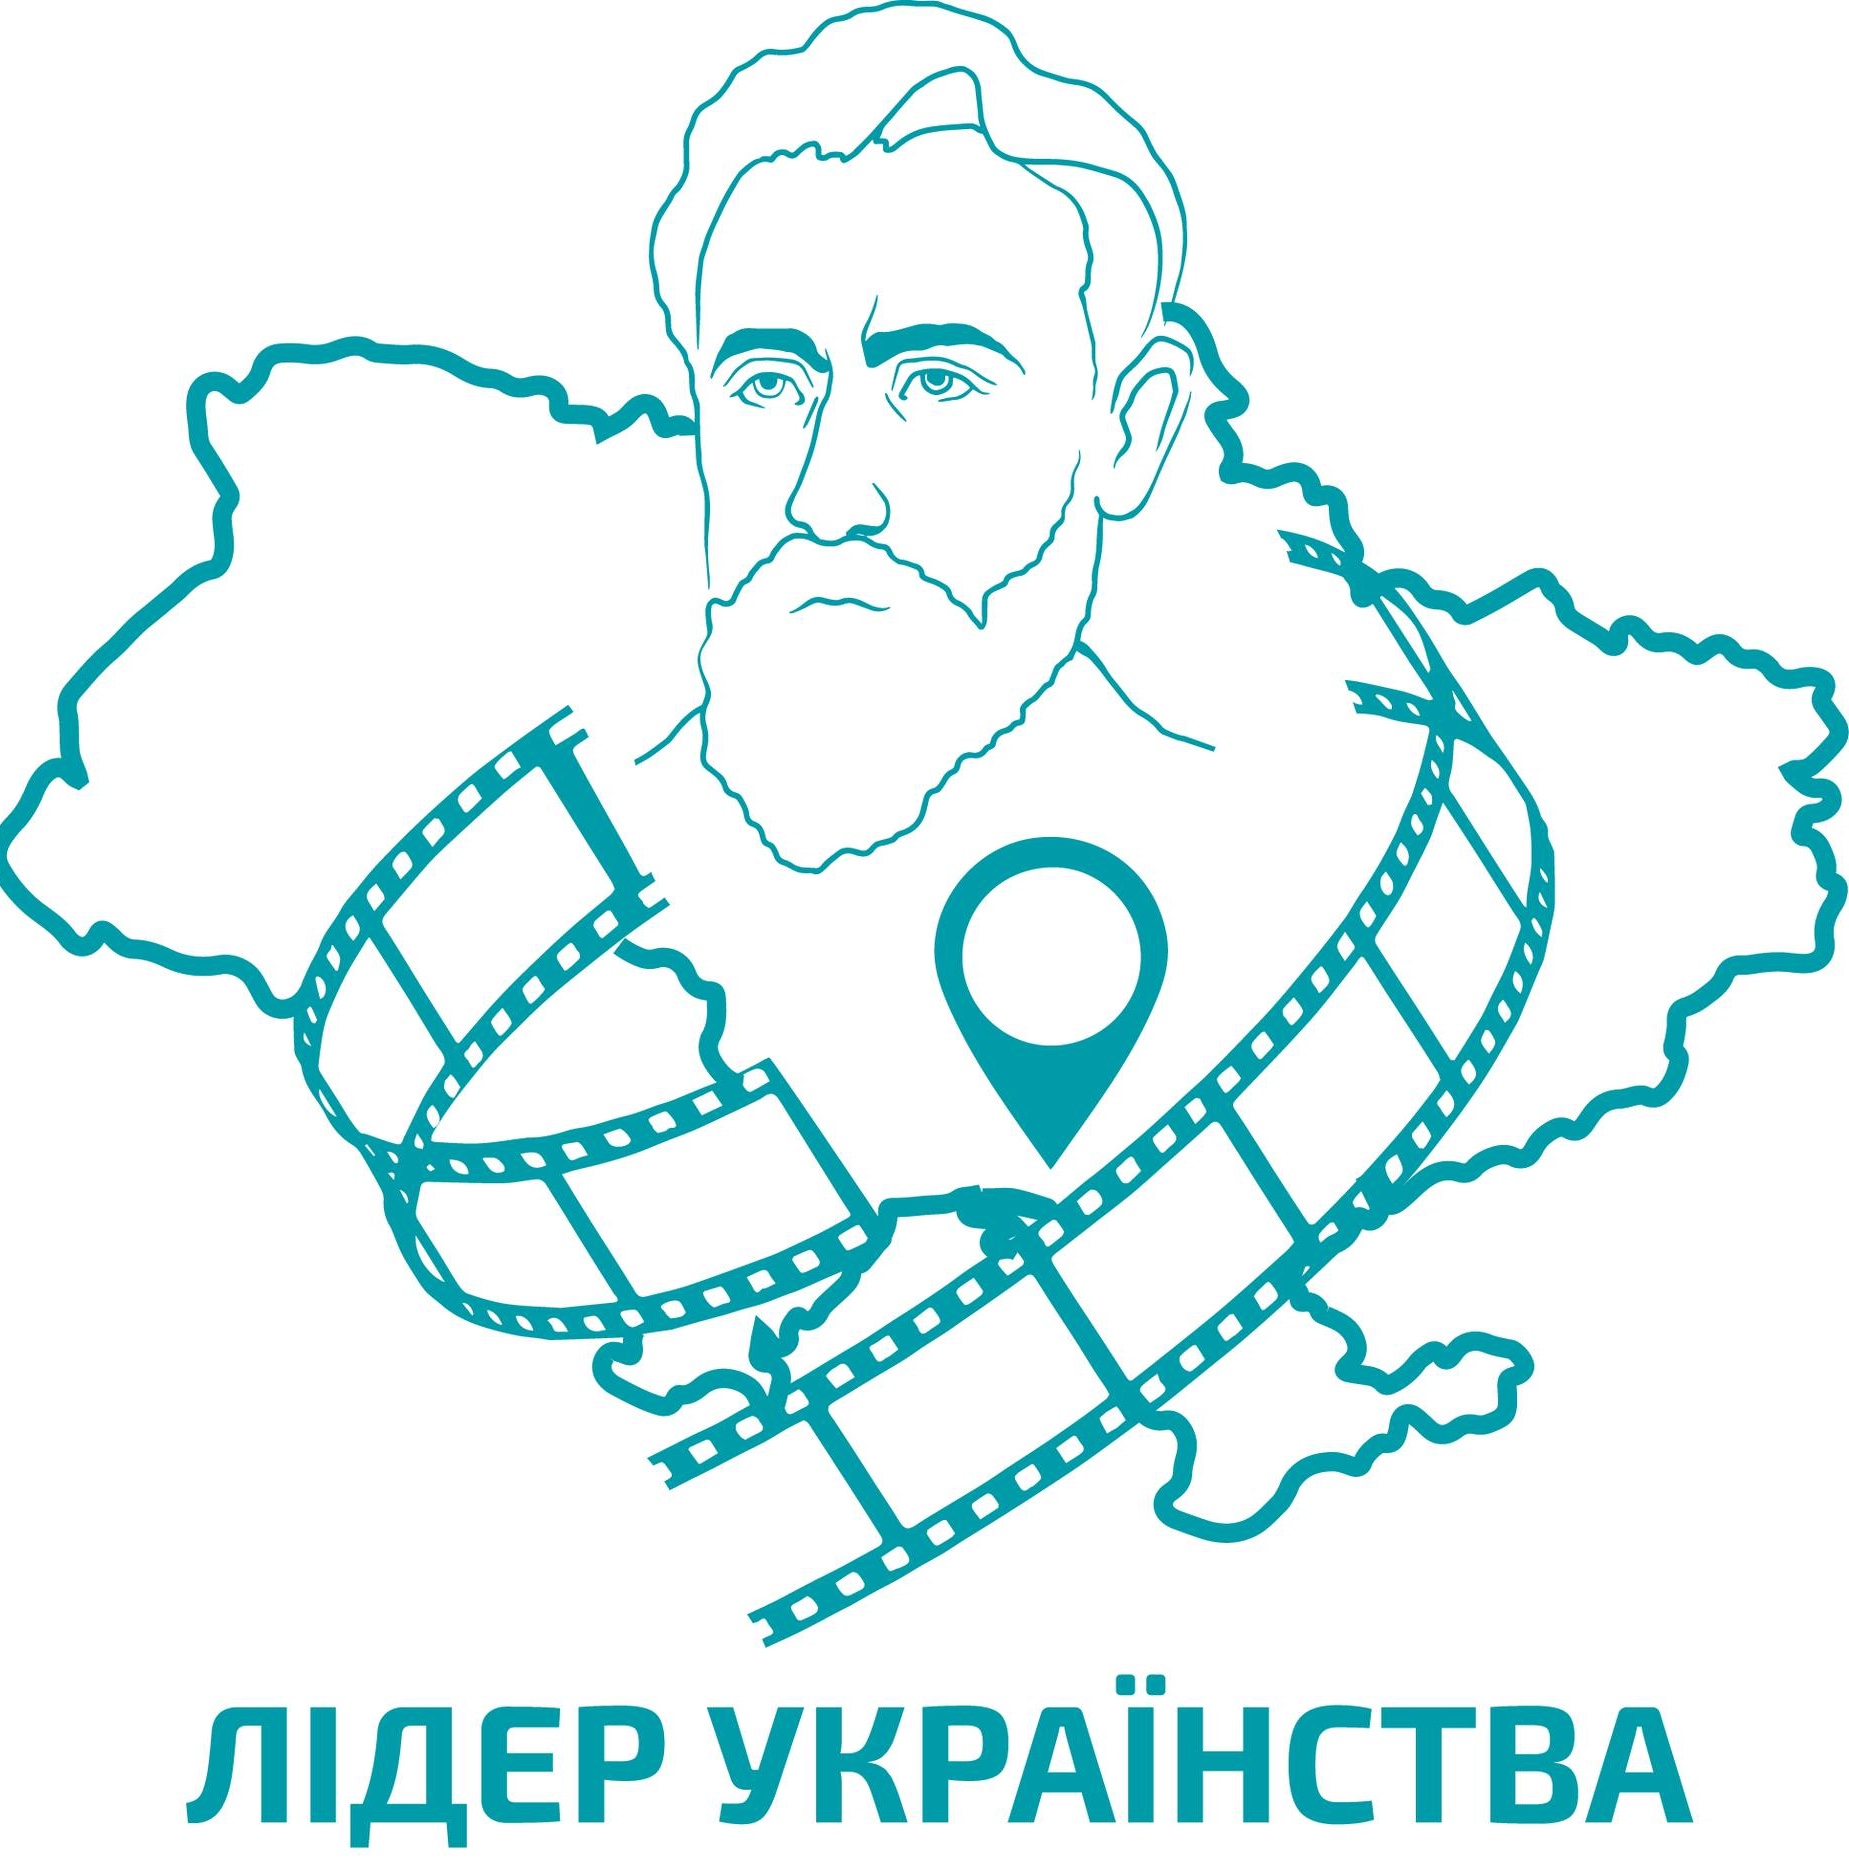 Лідер українства в серці України